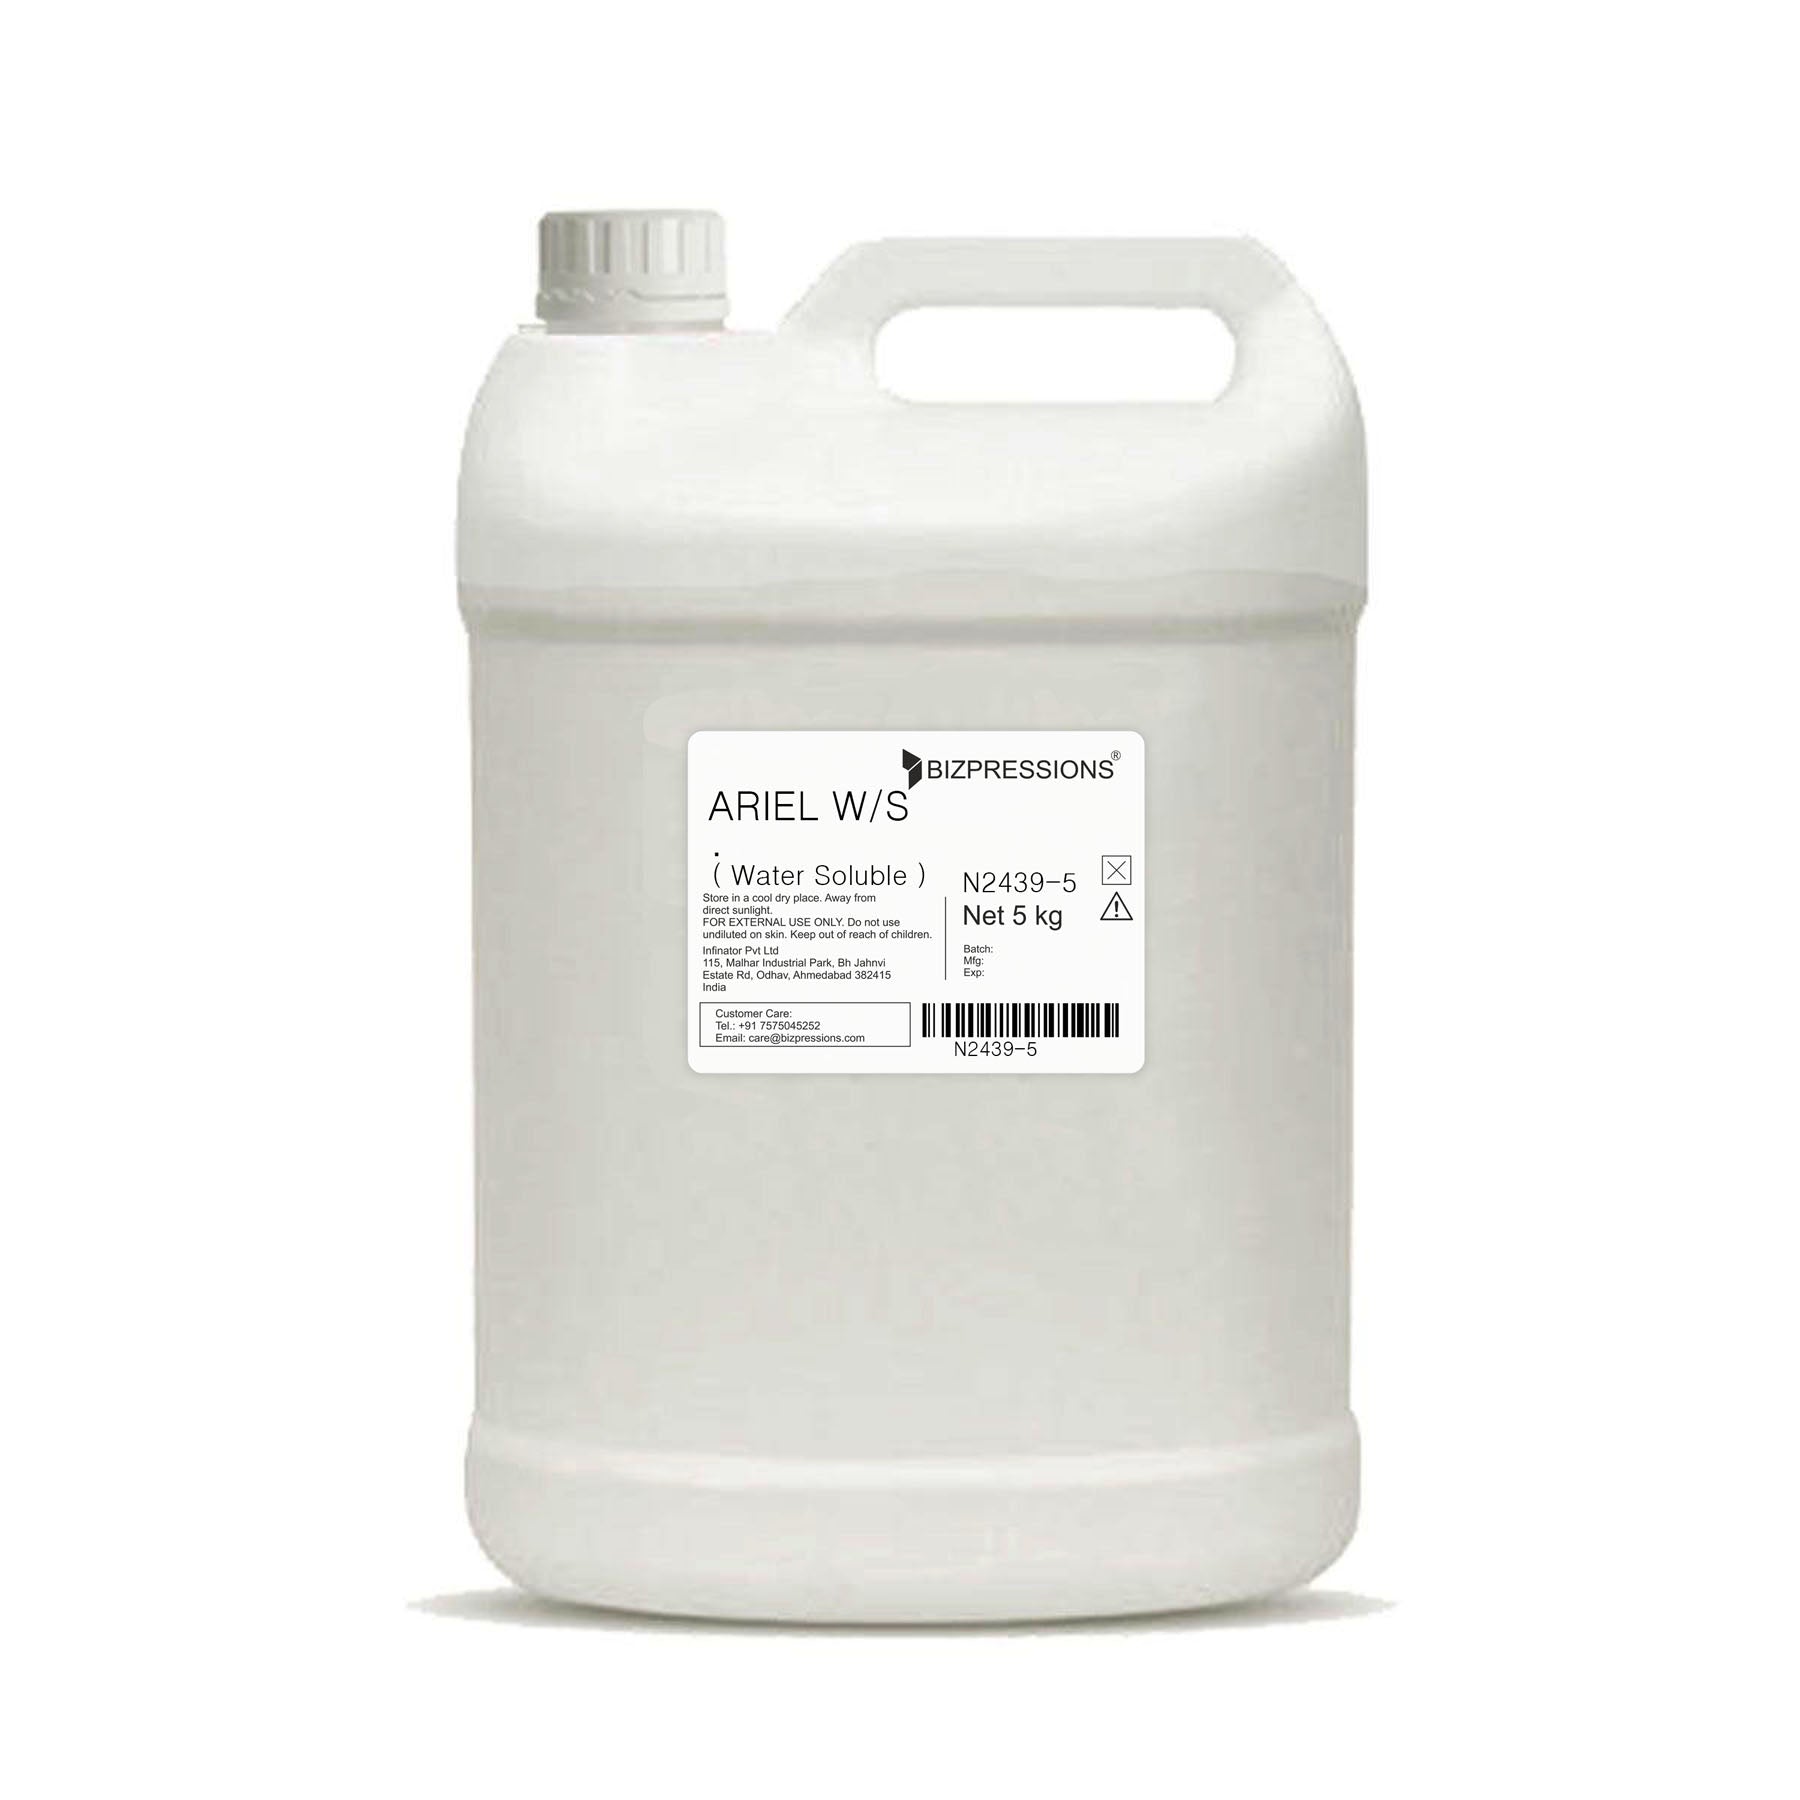 ARIEL W/S - Fragrance ( Water Soluble ) - 5 kg